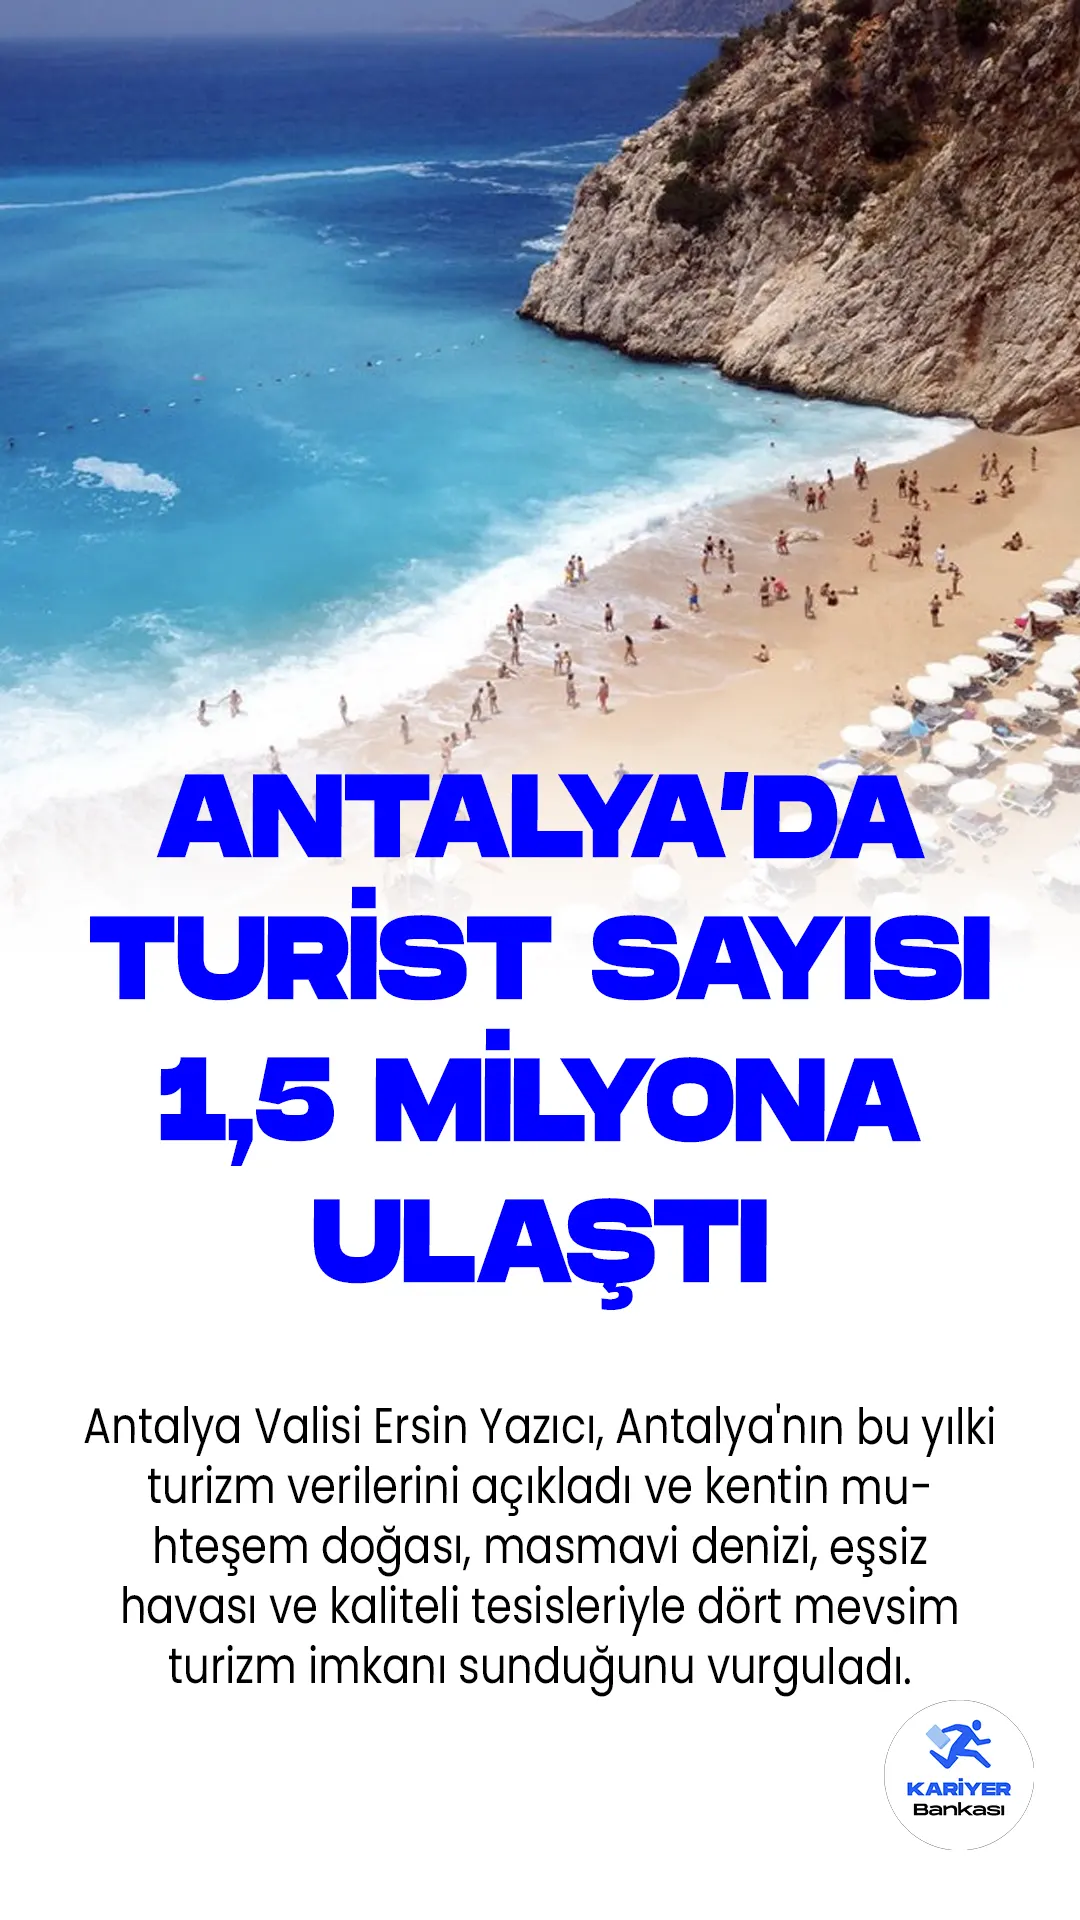 Antalya'da Turist Sayısı 1,5 Milyona Ulaştı.Antalya Valisi Ersin Yazıcı, Antalya'nın bu yılki turizm verilerini açıkladı ve kentin muhteşem doğası, masmavi denizi, eşsiz havası ve kaliteli tesisleriyle dört mevsim turizm imkanı sunduğunu vurguladı. 1-18 Temmuz tarihleri arasında Antalya'yı hava yoluyla ziyaret eden turist sayısının 1 milyon 514 bin 216 olduğu bildirildi.